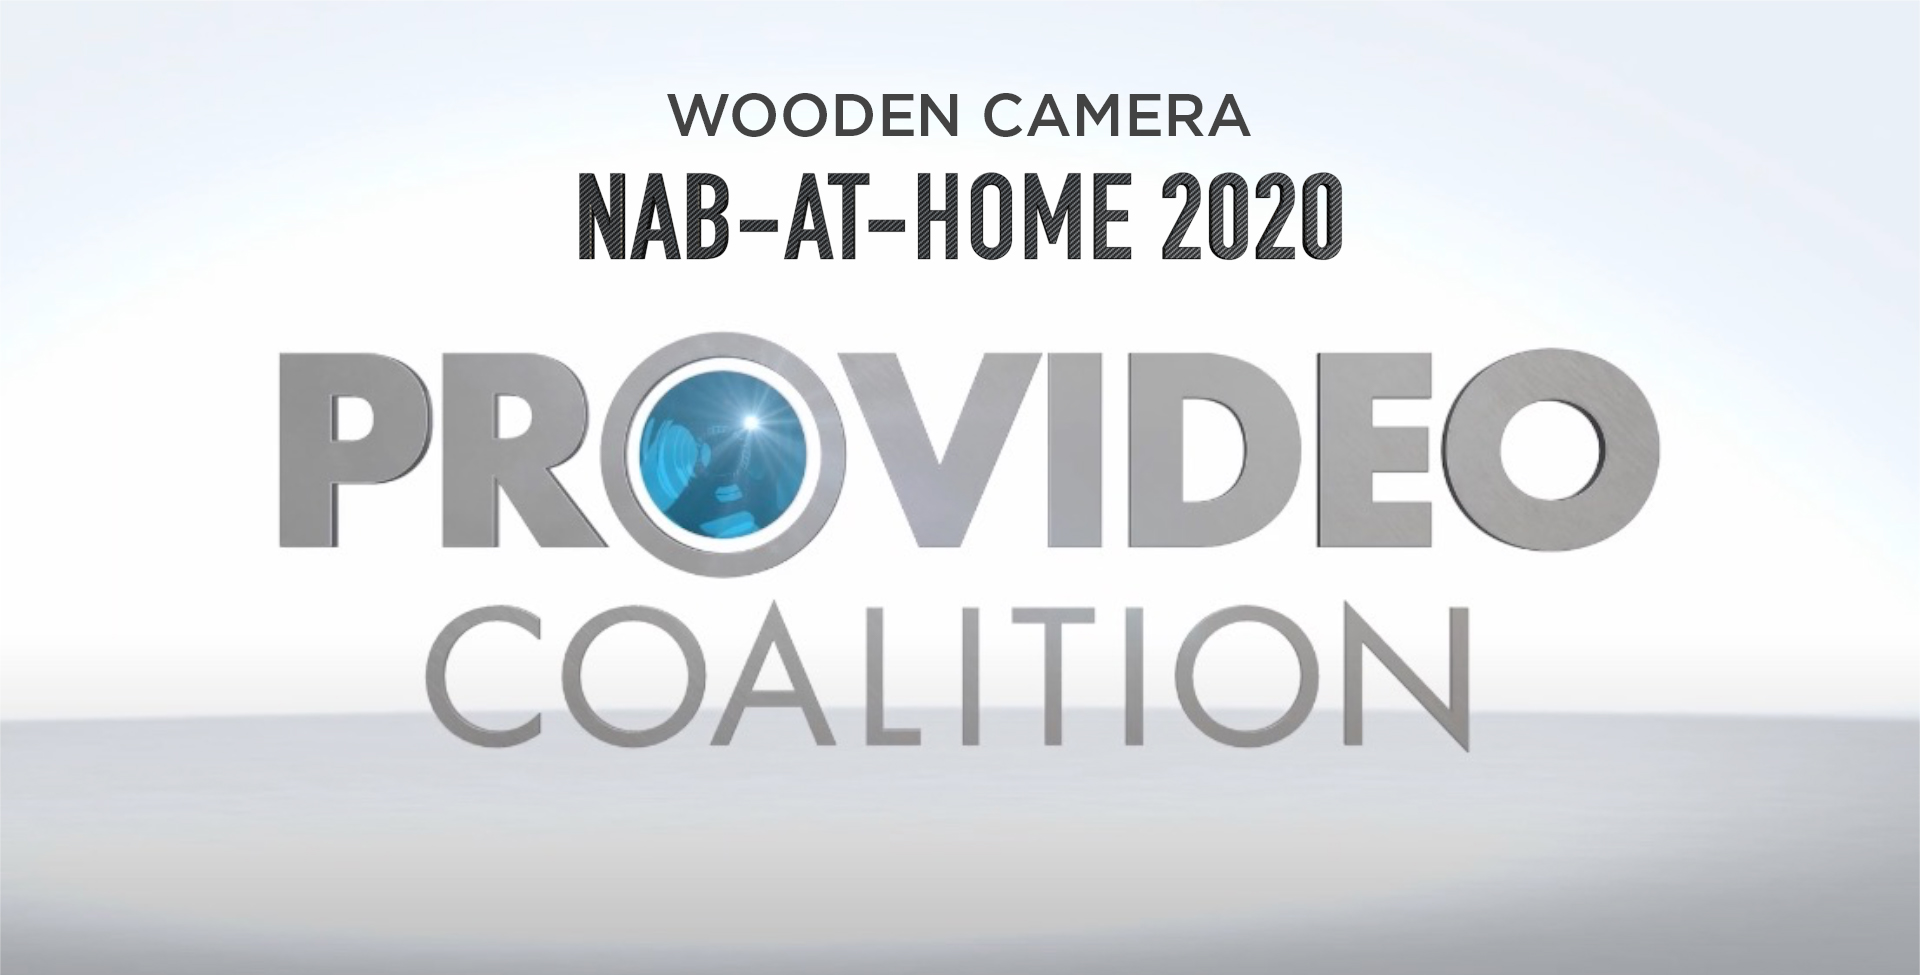 nab-at-home-2020woodencamera